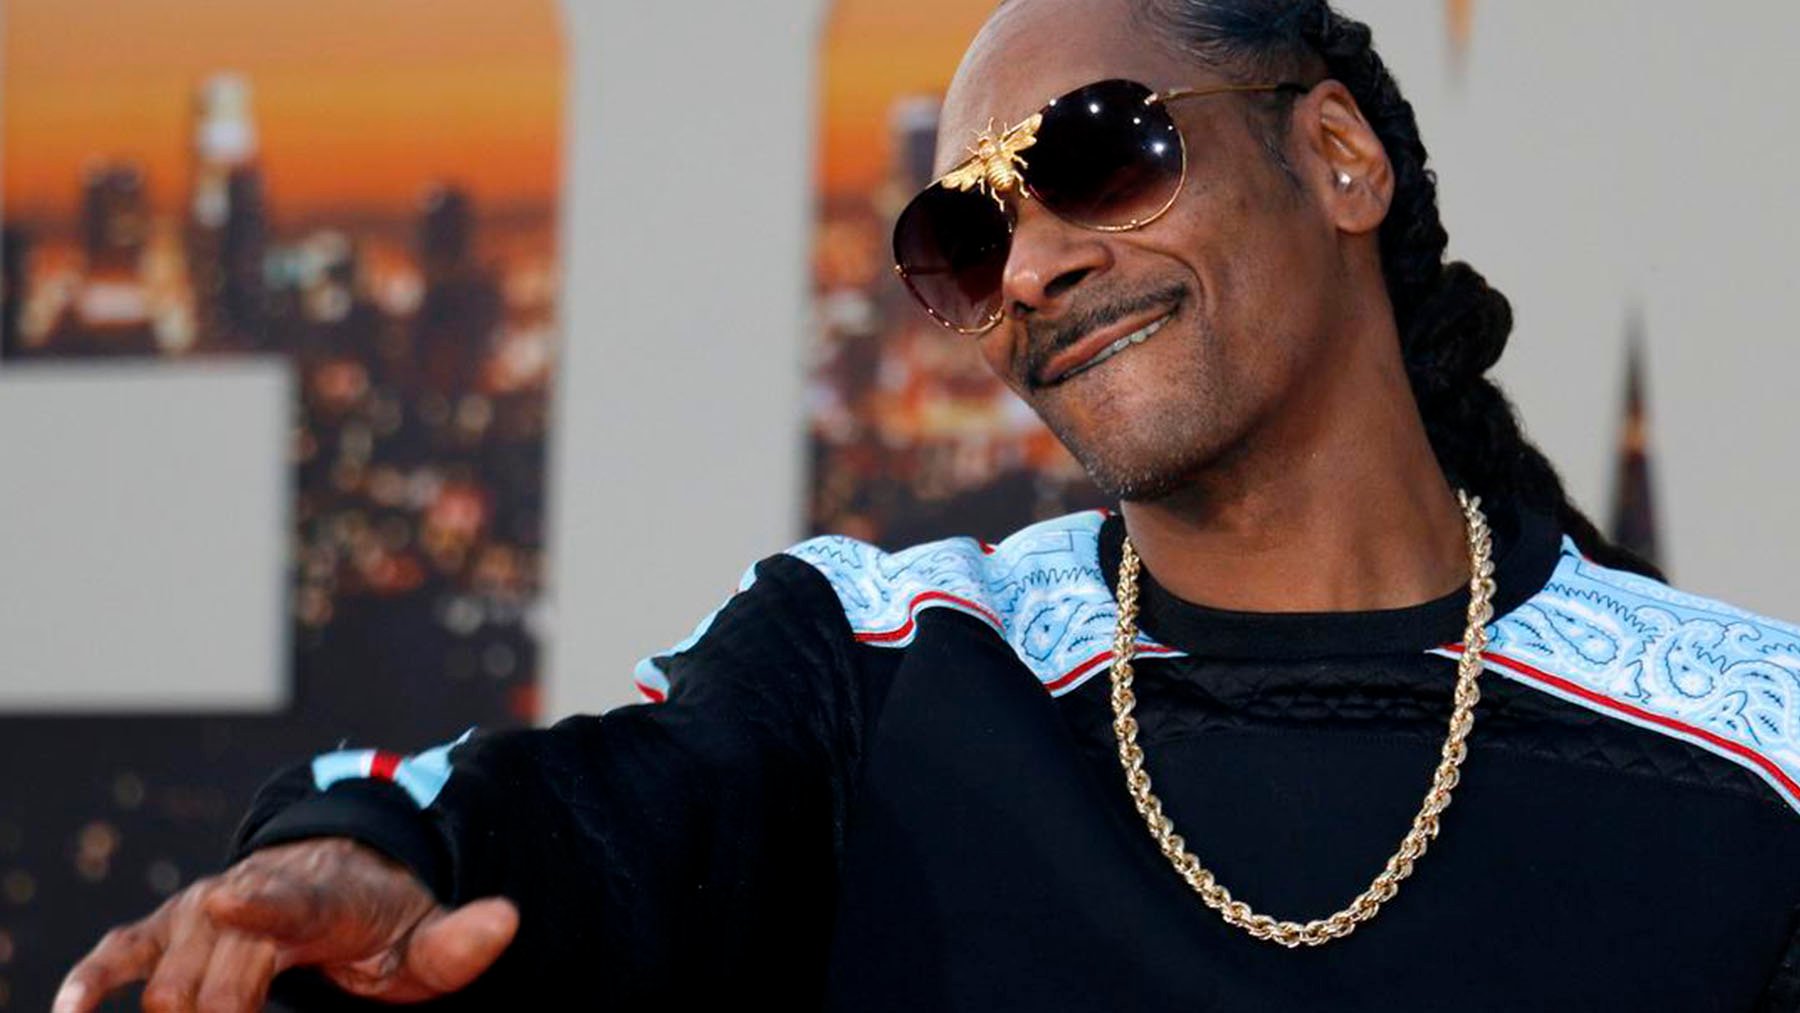 En marcha una película biográfica sobre el rapero Snoop Dogg